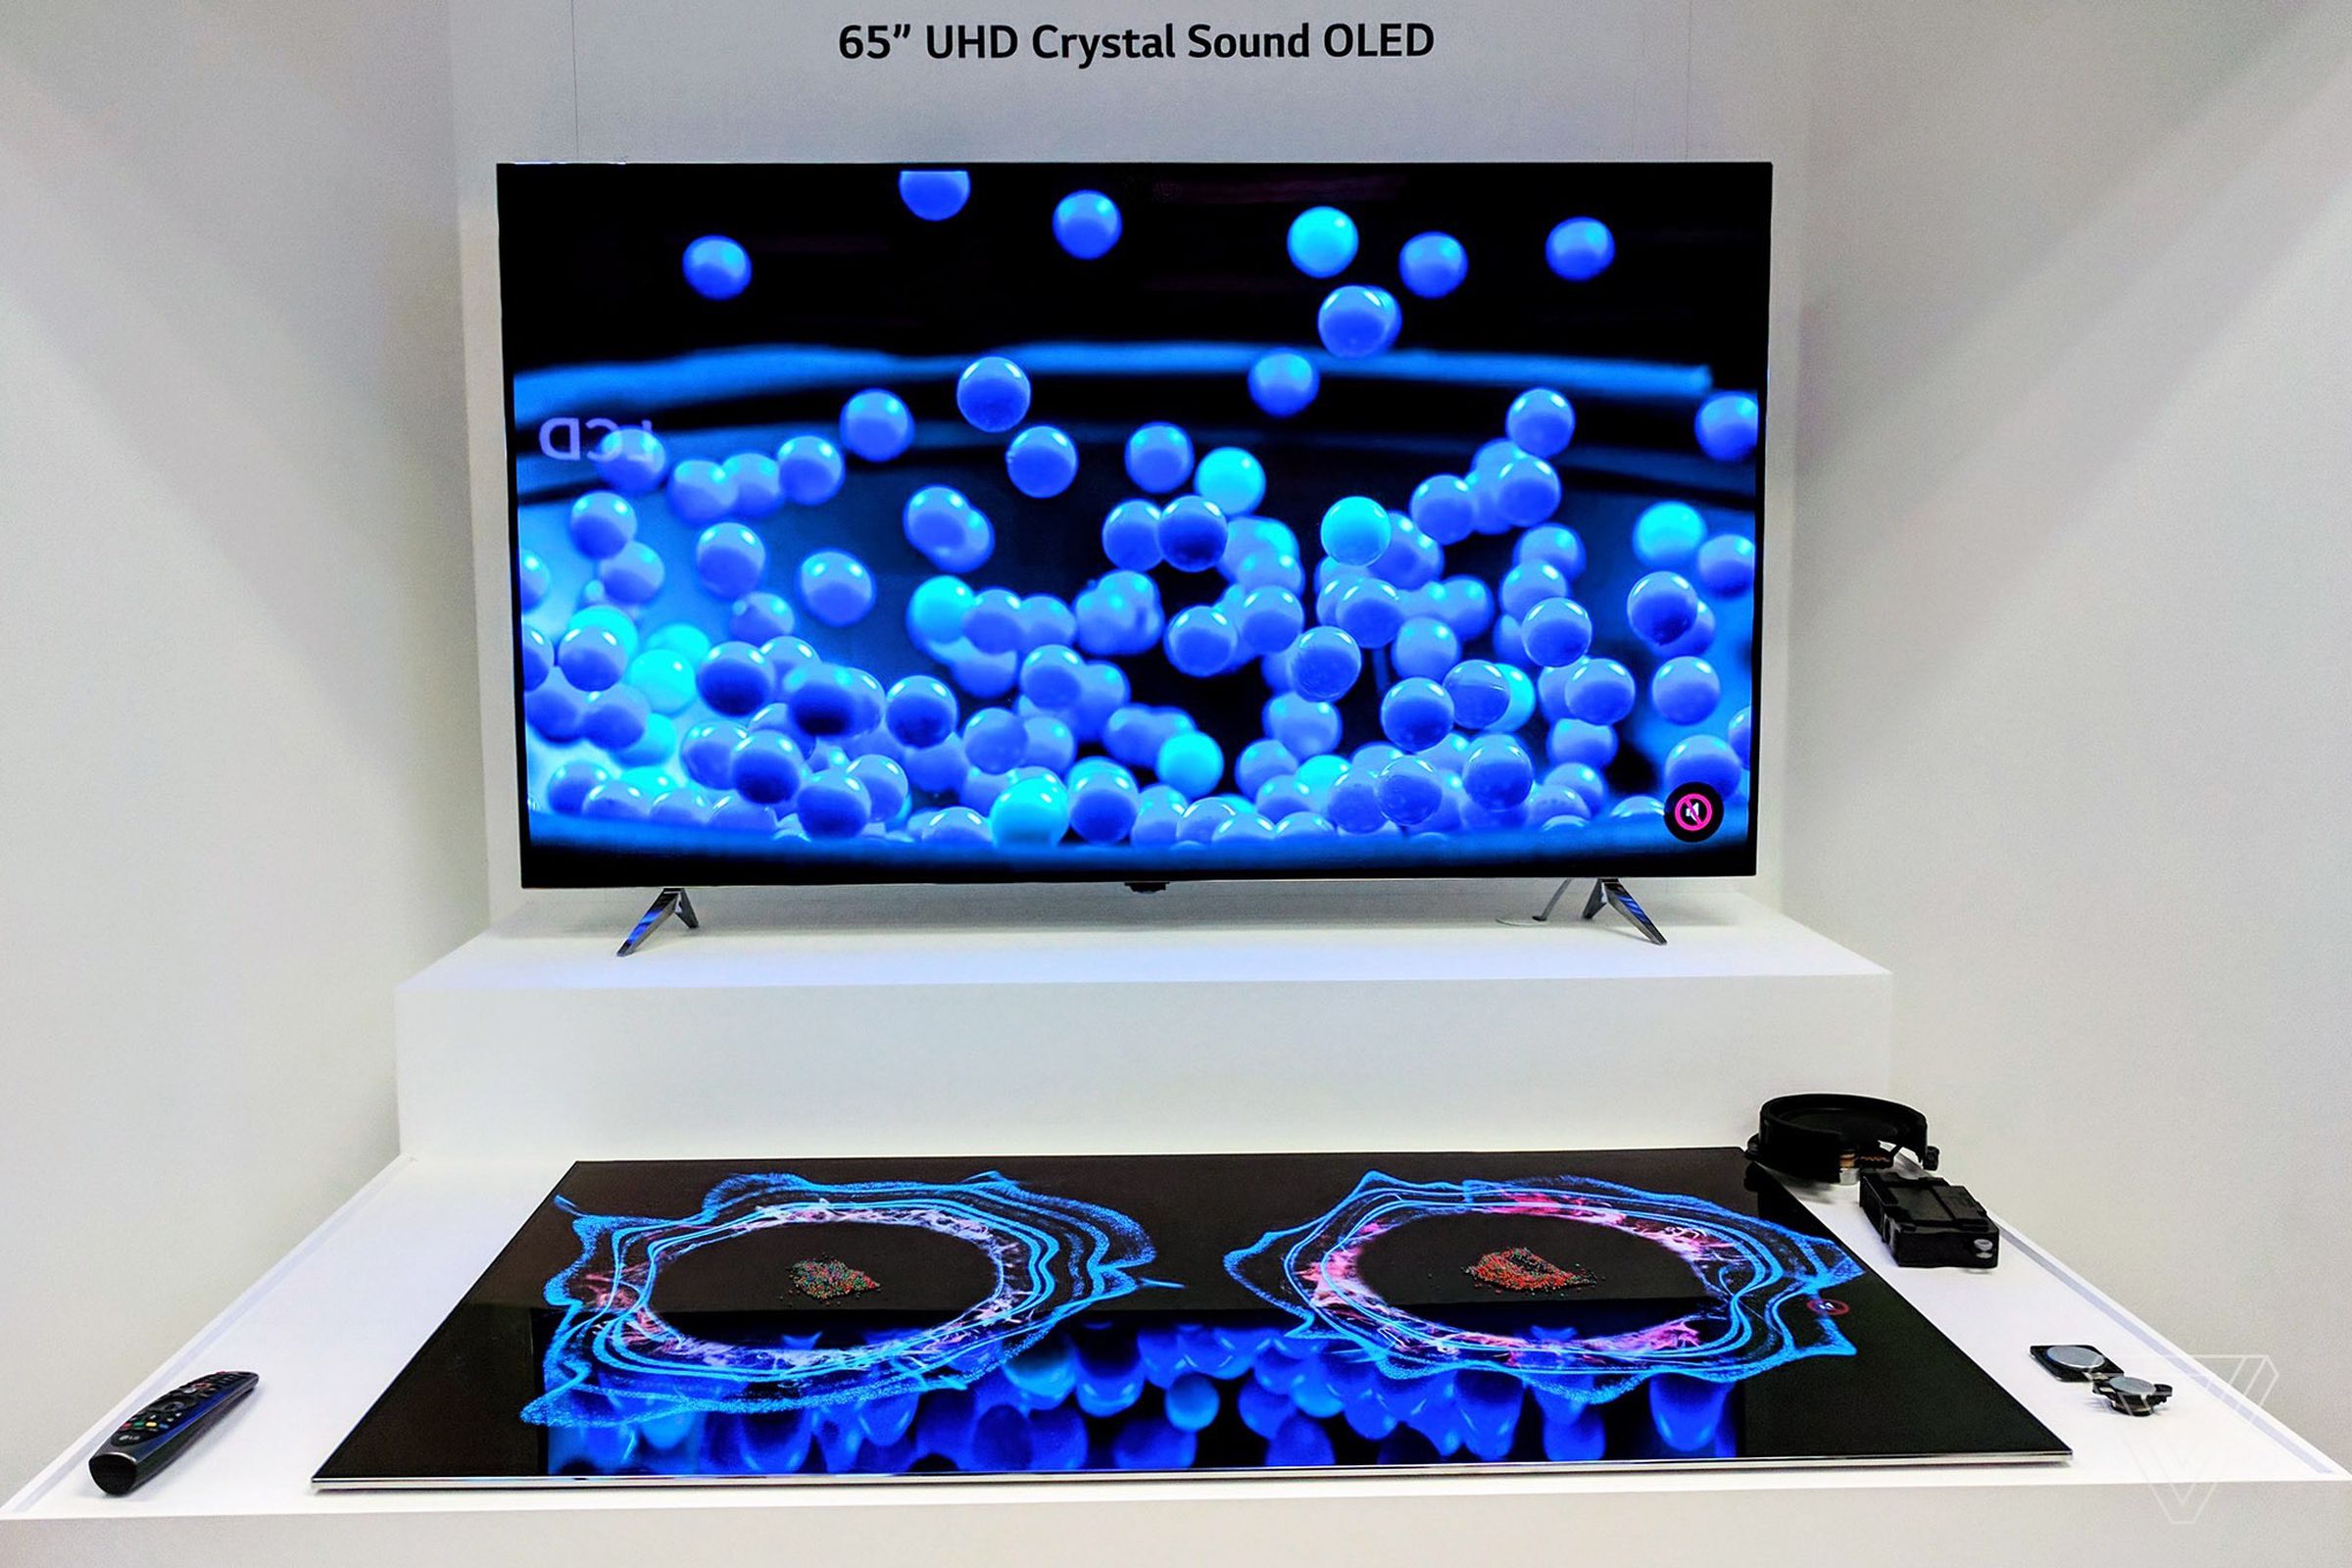 LG Display Crystal Sound OLED TV